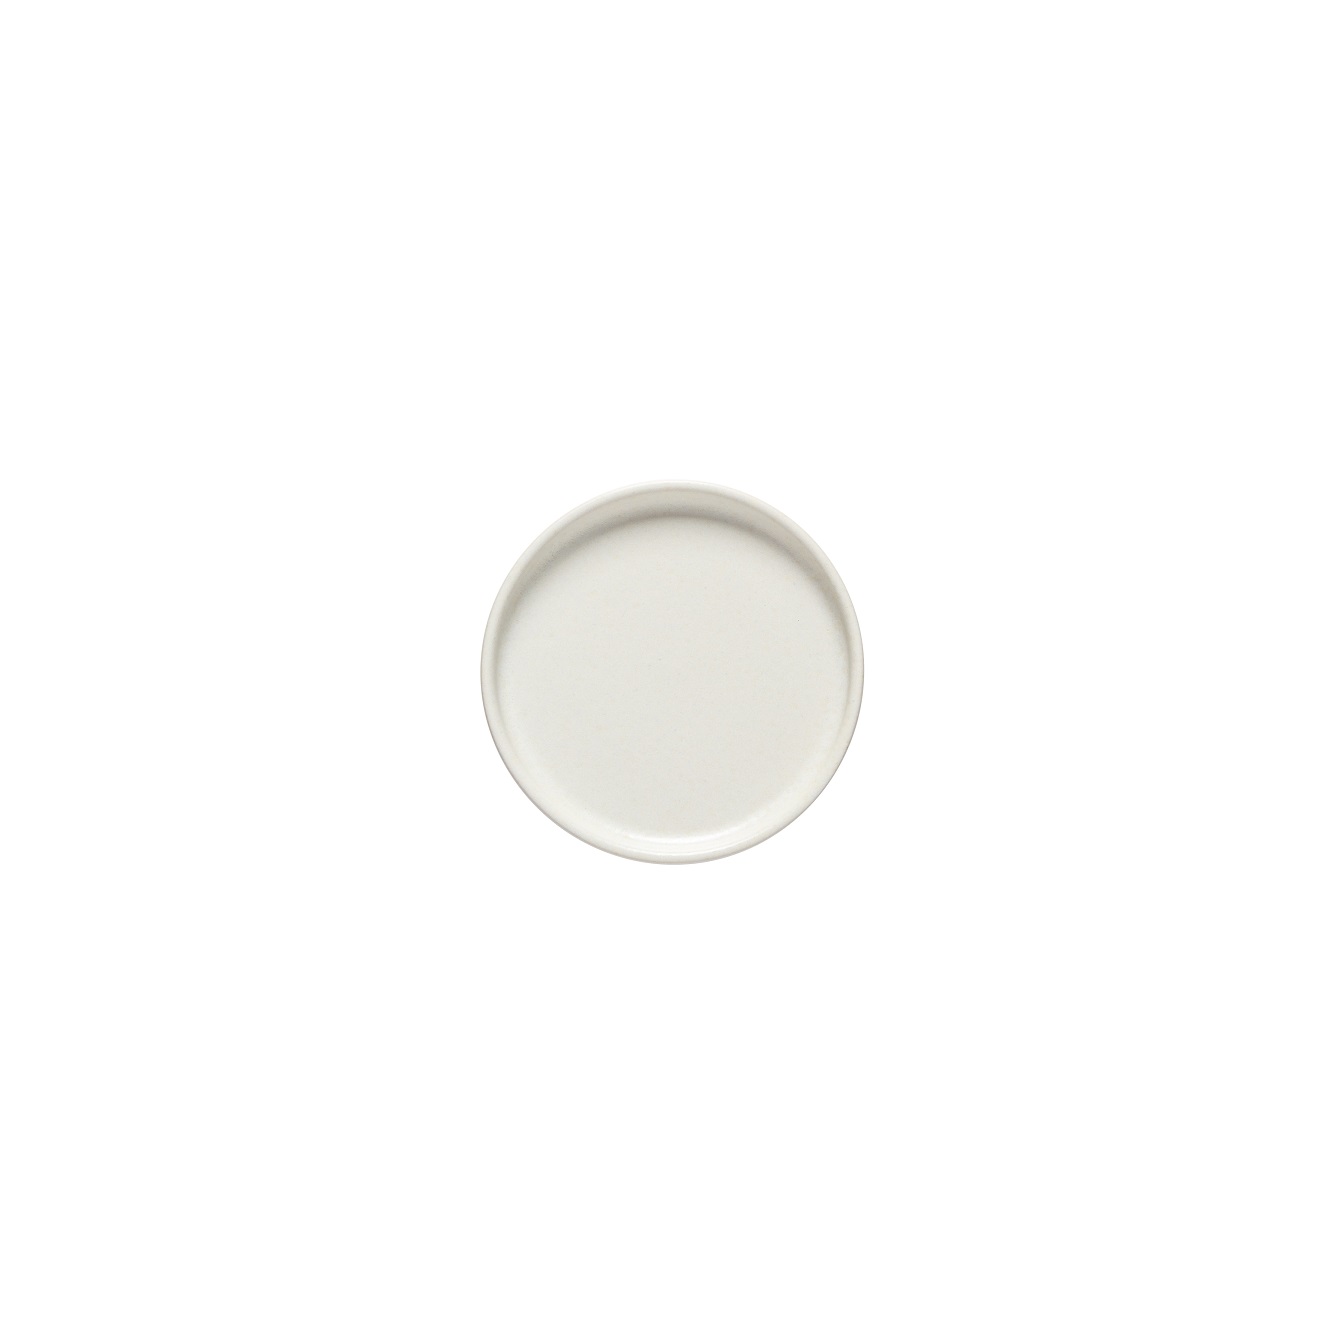 Redonda White Round Plate 13cm Gift